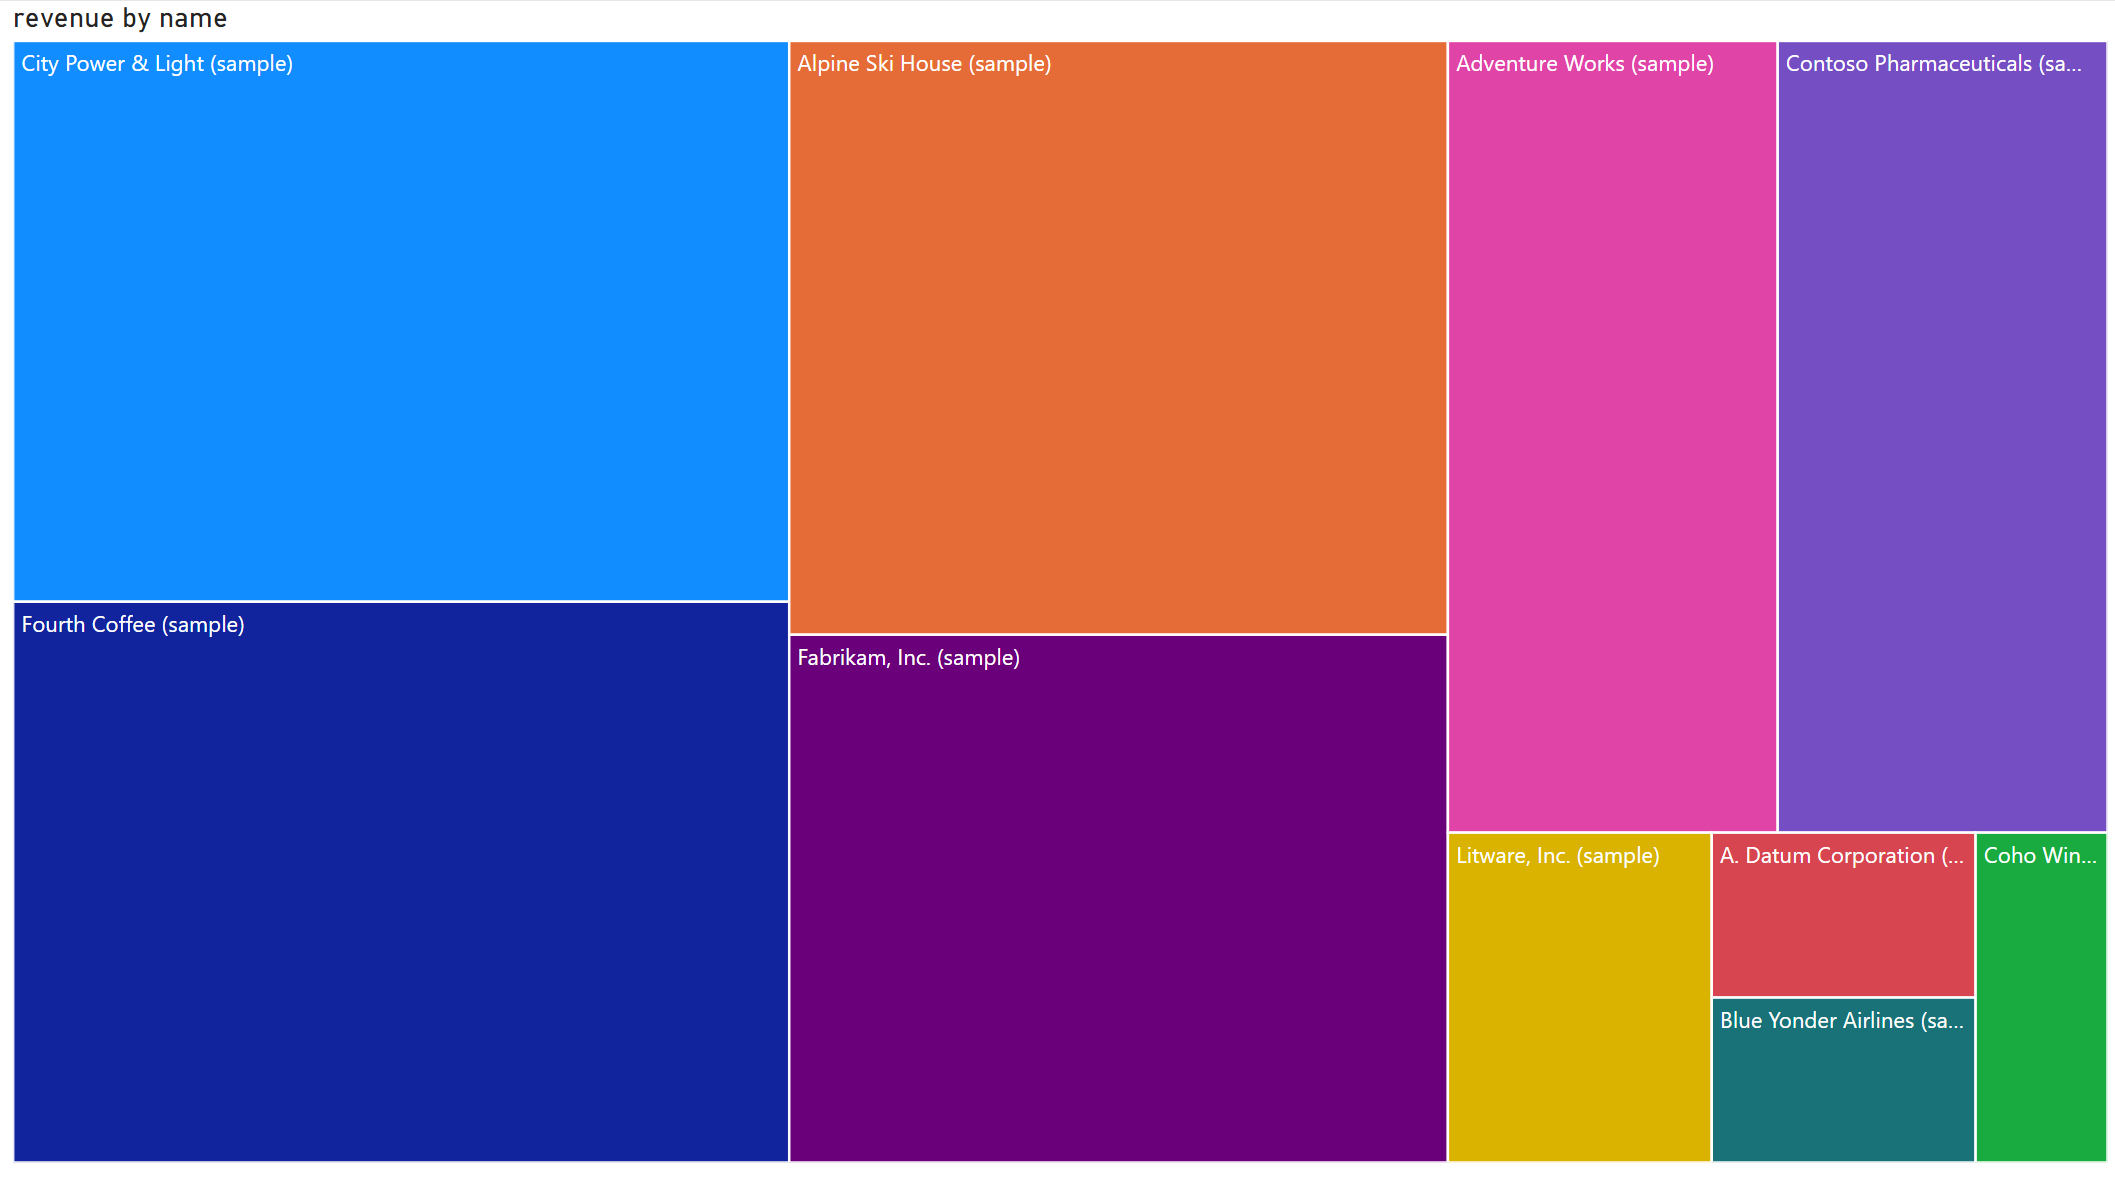 彩色樹狀結構圖顯示 10 個個別客戶的總營收和名稱。